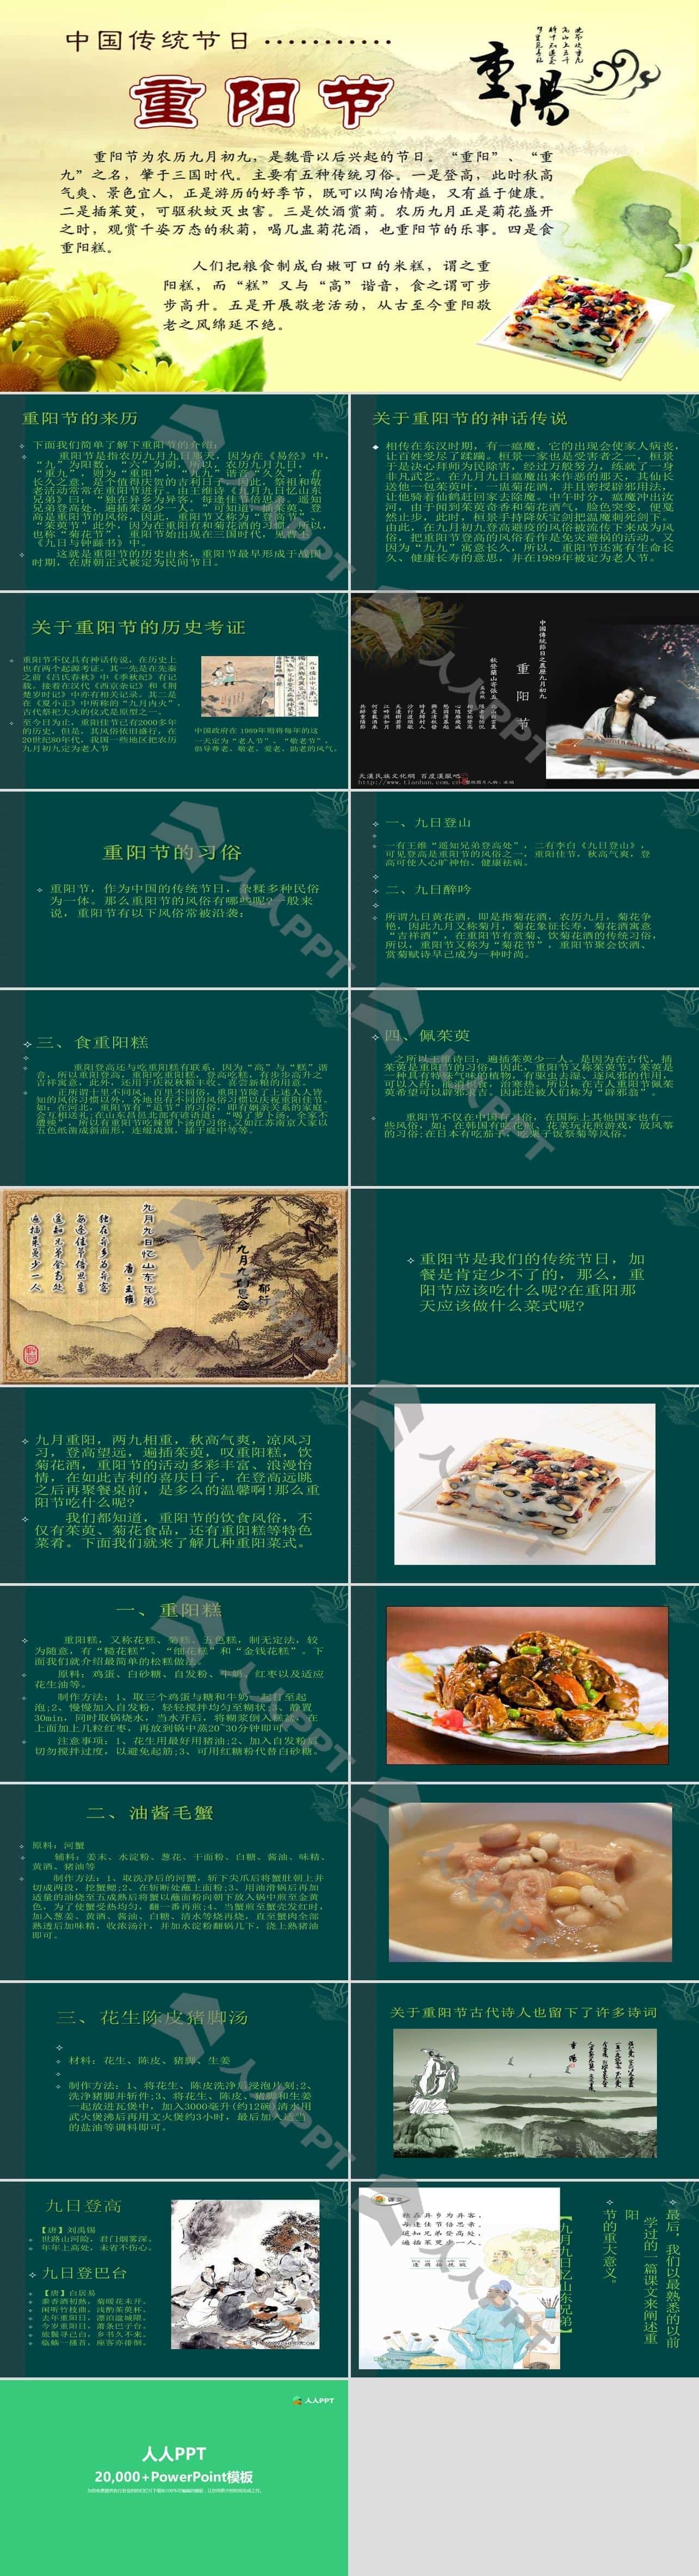 中国传统节日9月9日重阳节PPT模板长图